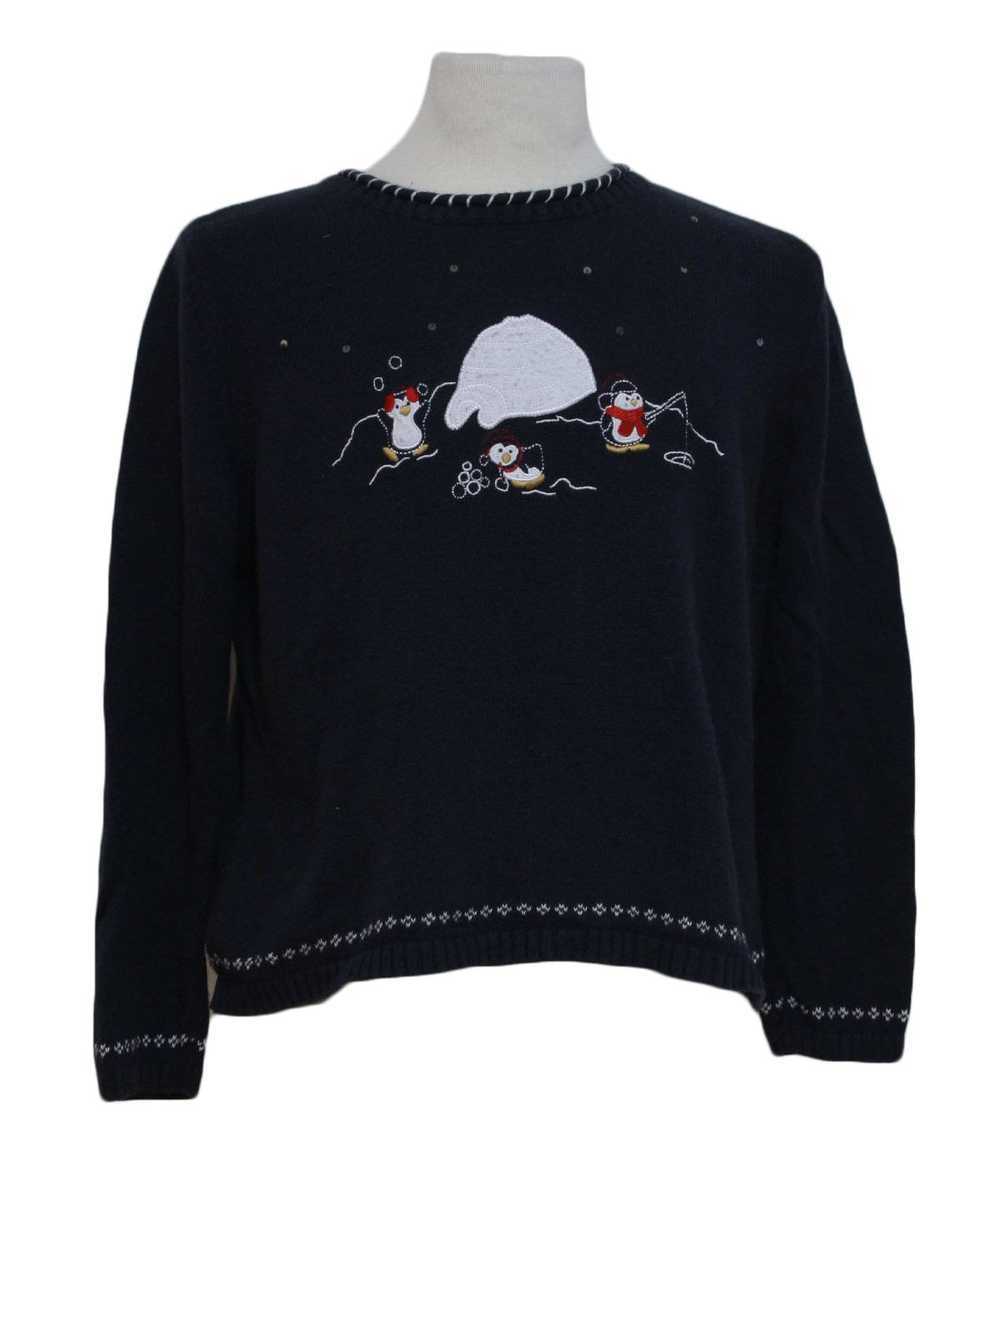 Christopher & Banks Womens Ugly Christmas Sweater - image 1